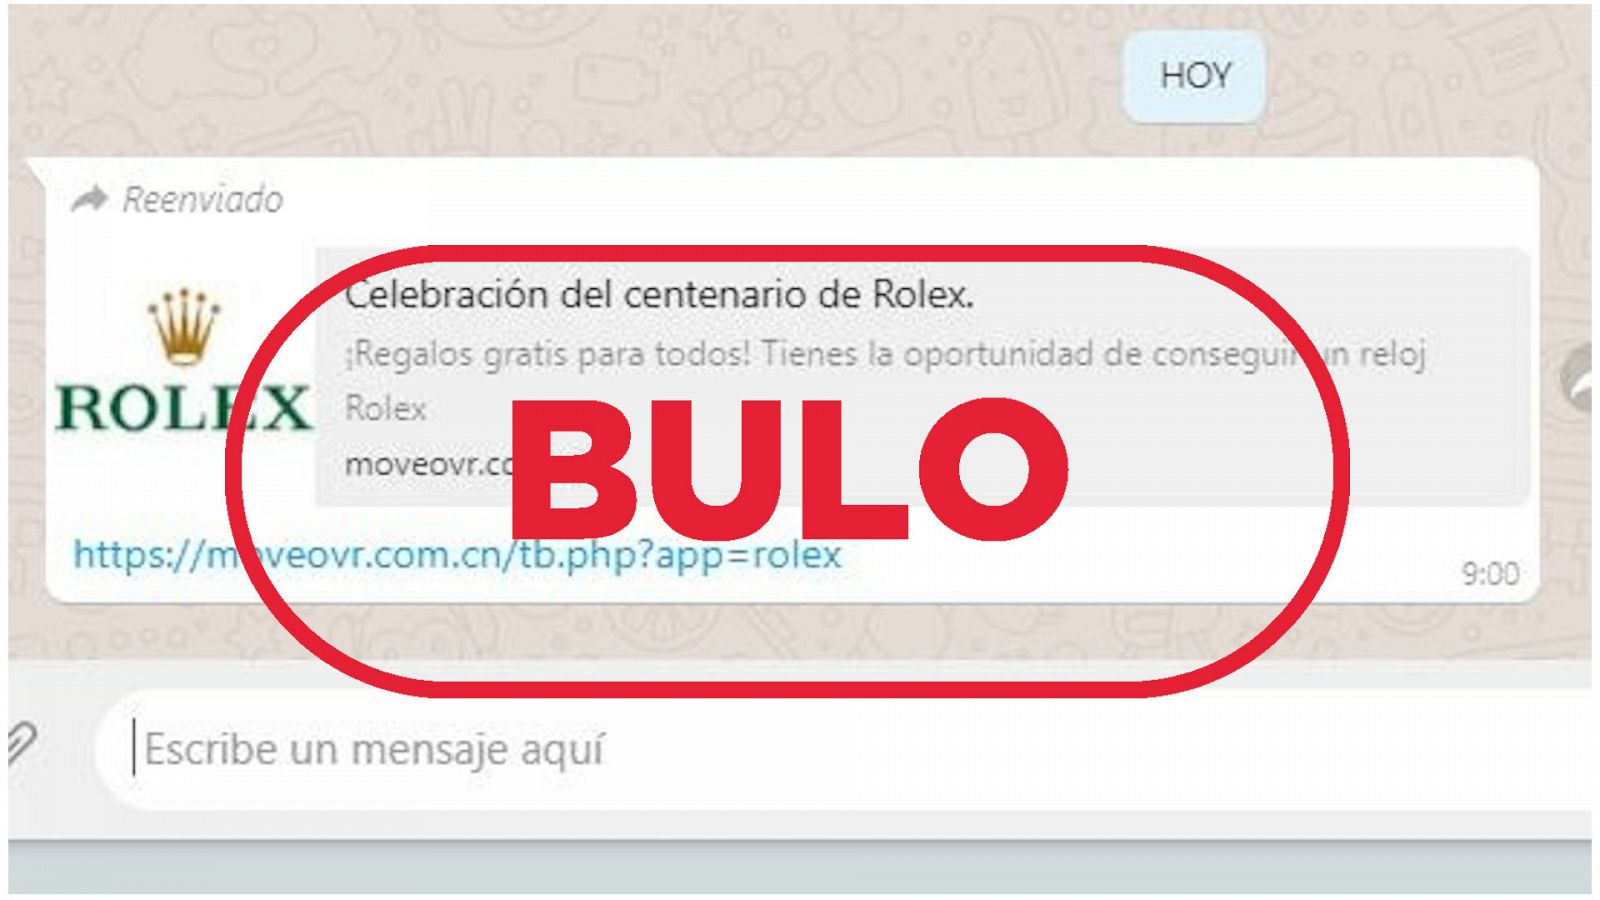 Mensaje de phishing suplantando a Rolex con el sello bulo en rojo de VerificaRTVE